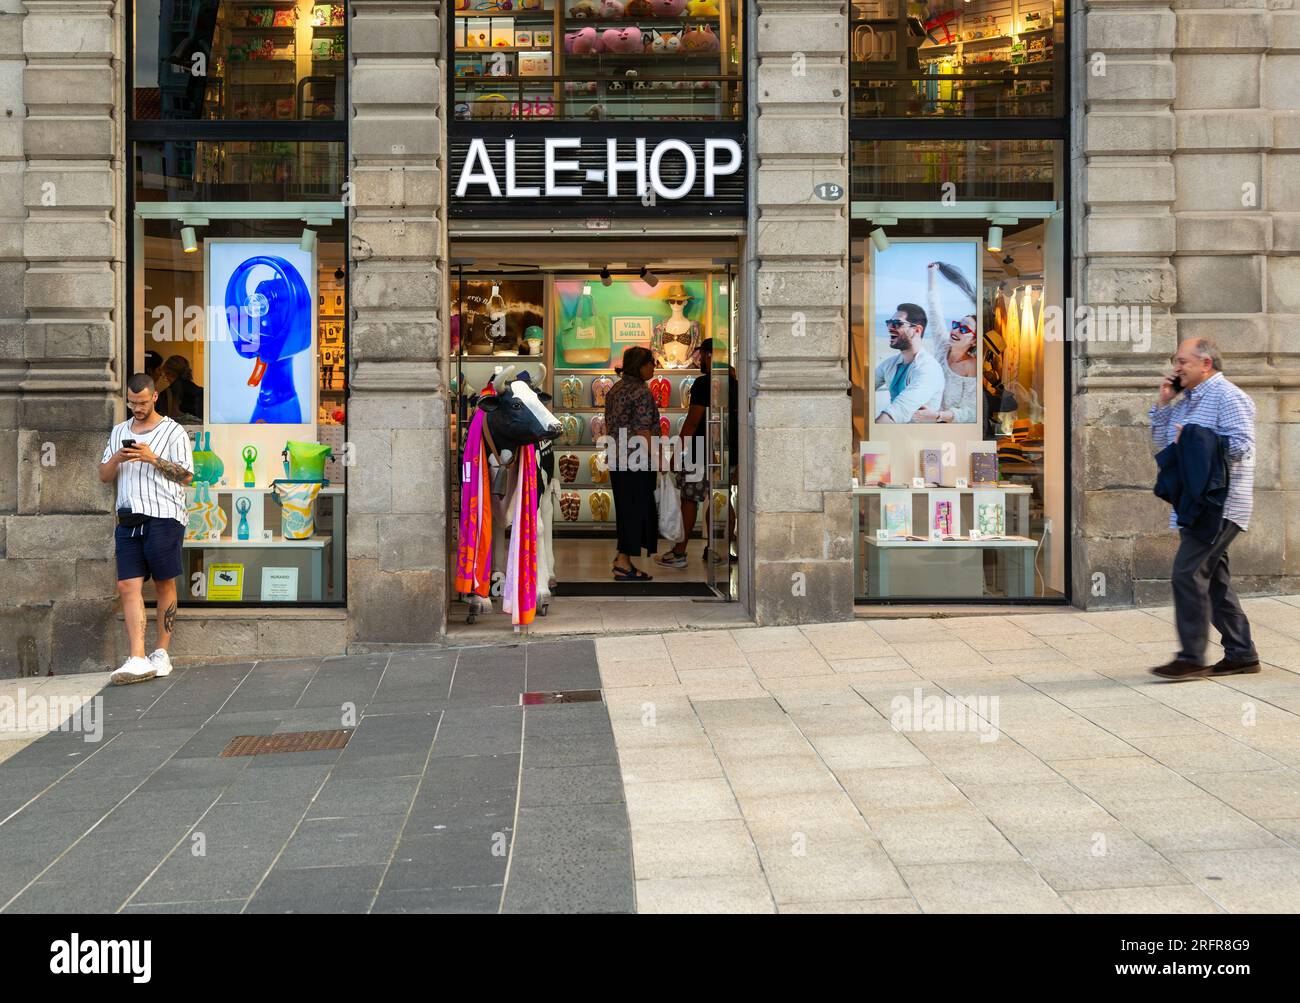 Ale-Hop shop store on Praza Porto do Sol plaza, city centre of Vigo, Galicia, Spain Stock Photo